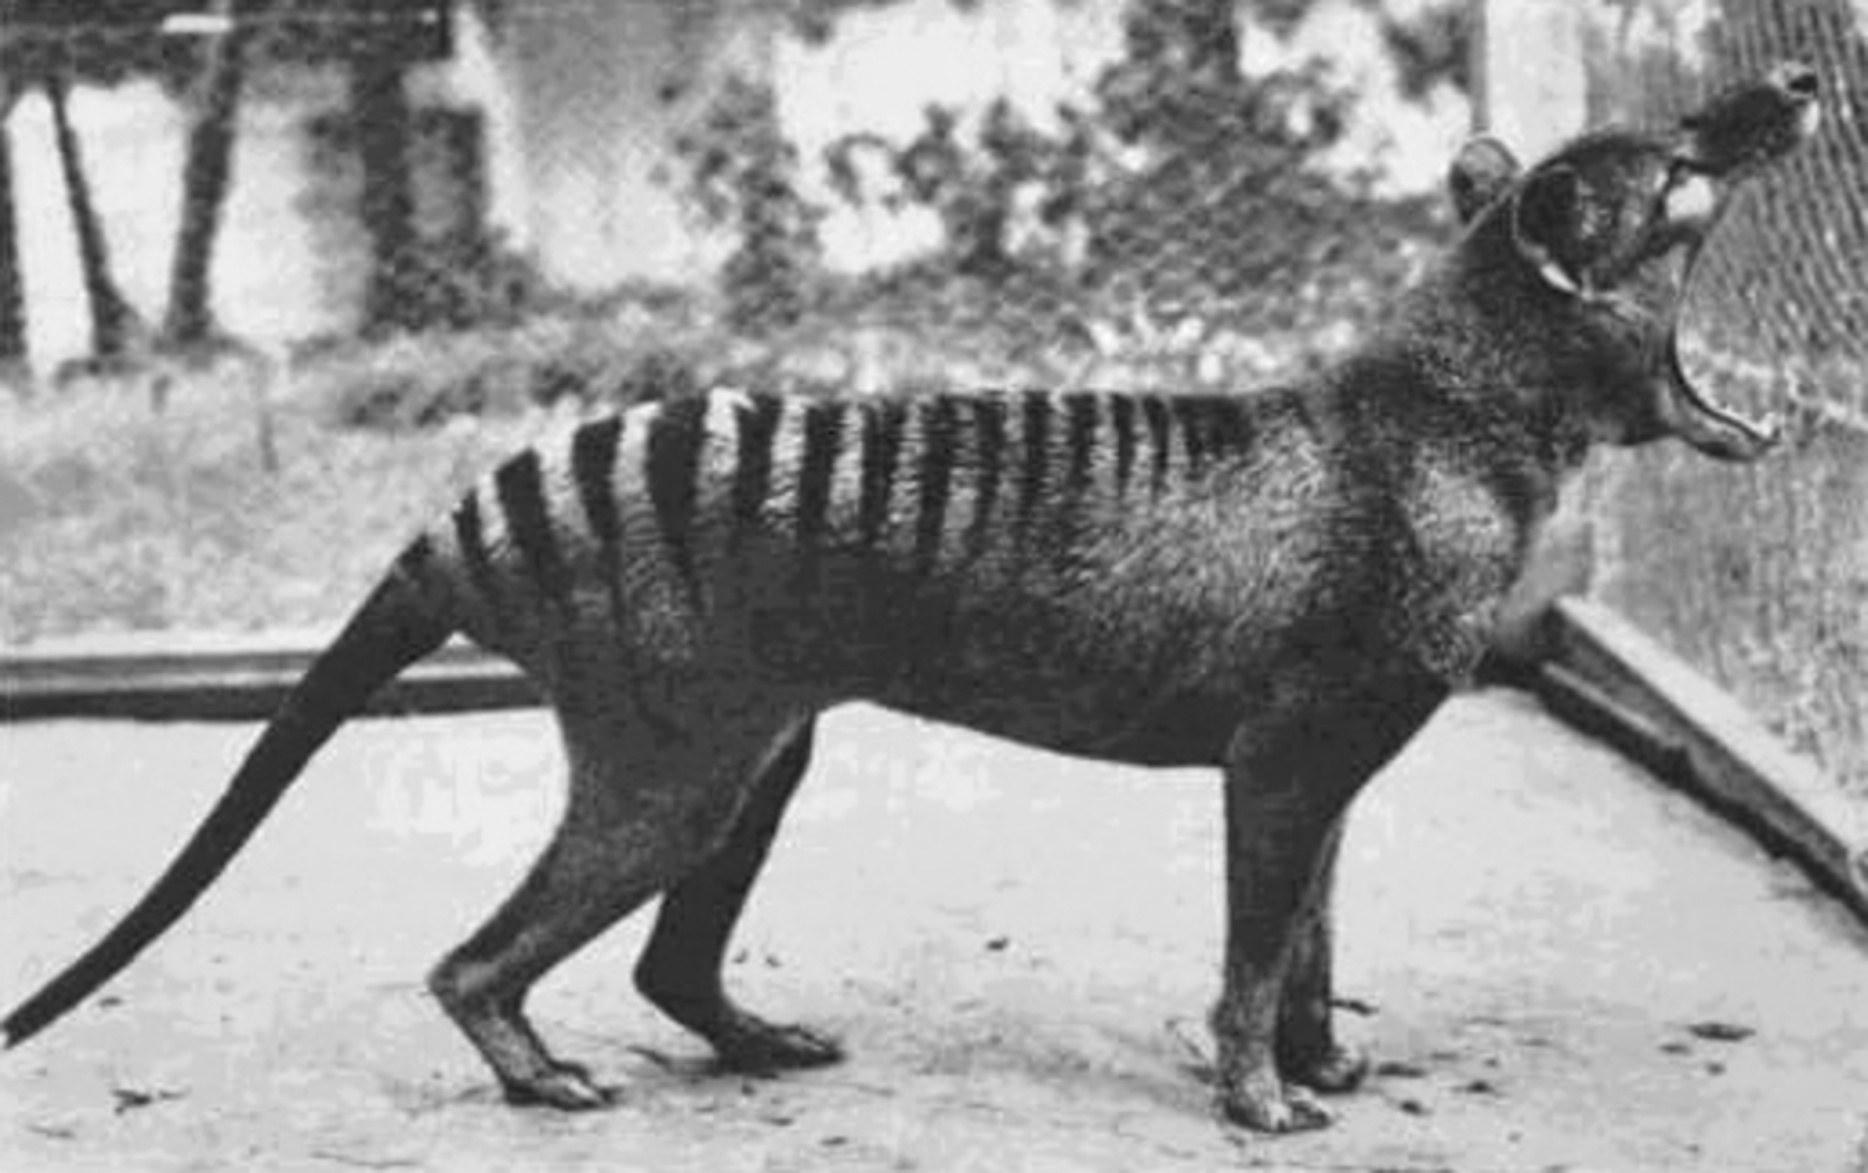 Ny thylacine dia afaka manokatra ny valanoranony amin'ny haavony tsy mahazatra: hatramin'ny 80 degre.